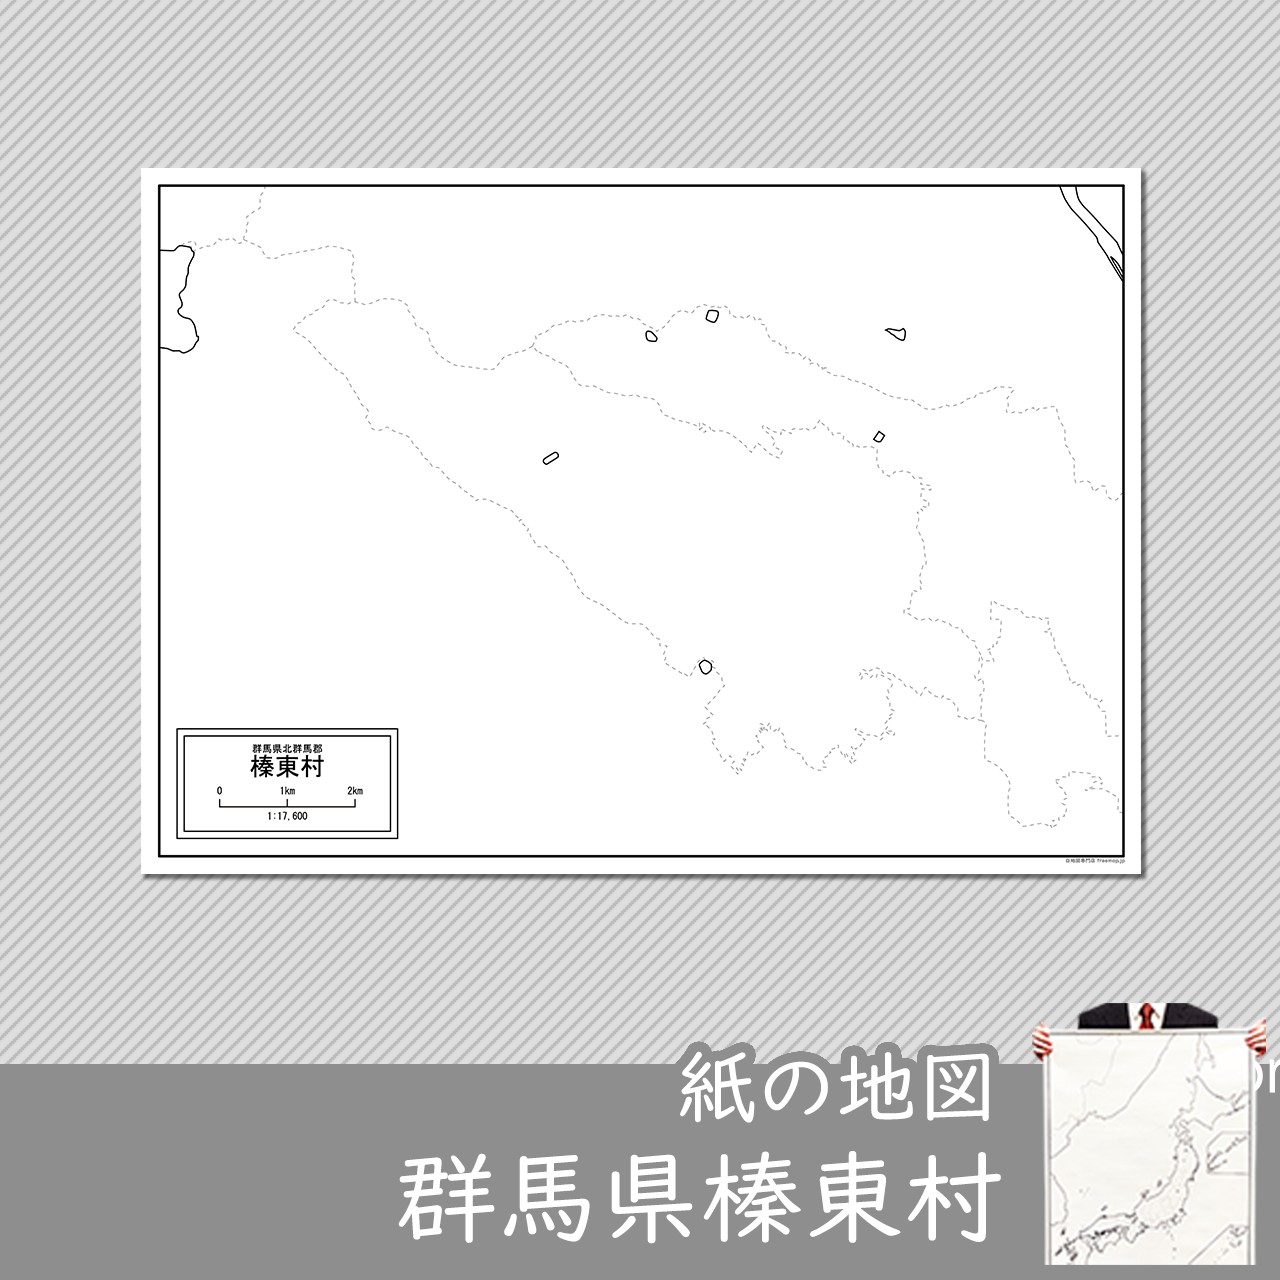 榛東村の紙の白地図のサムネイル